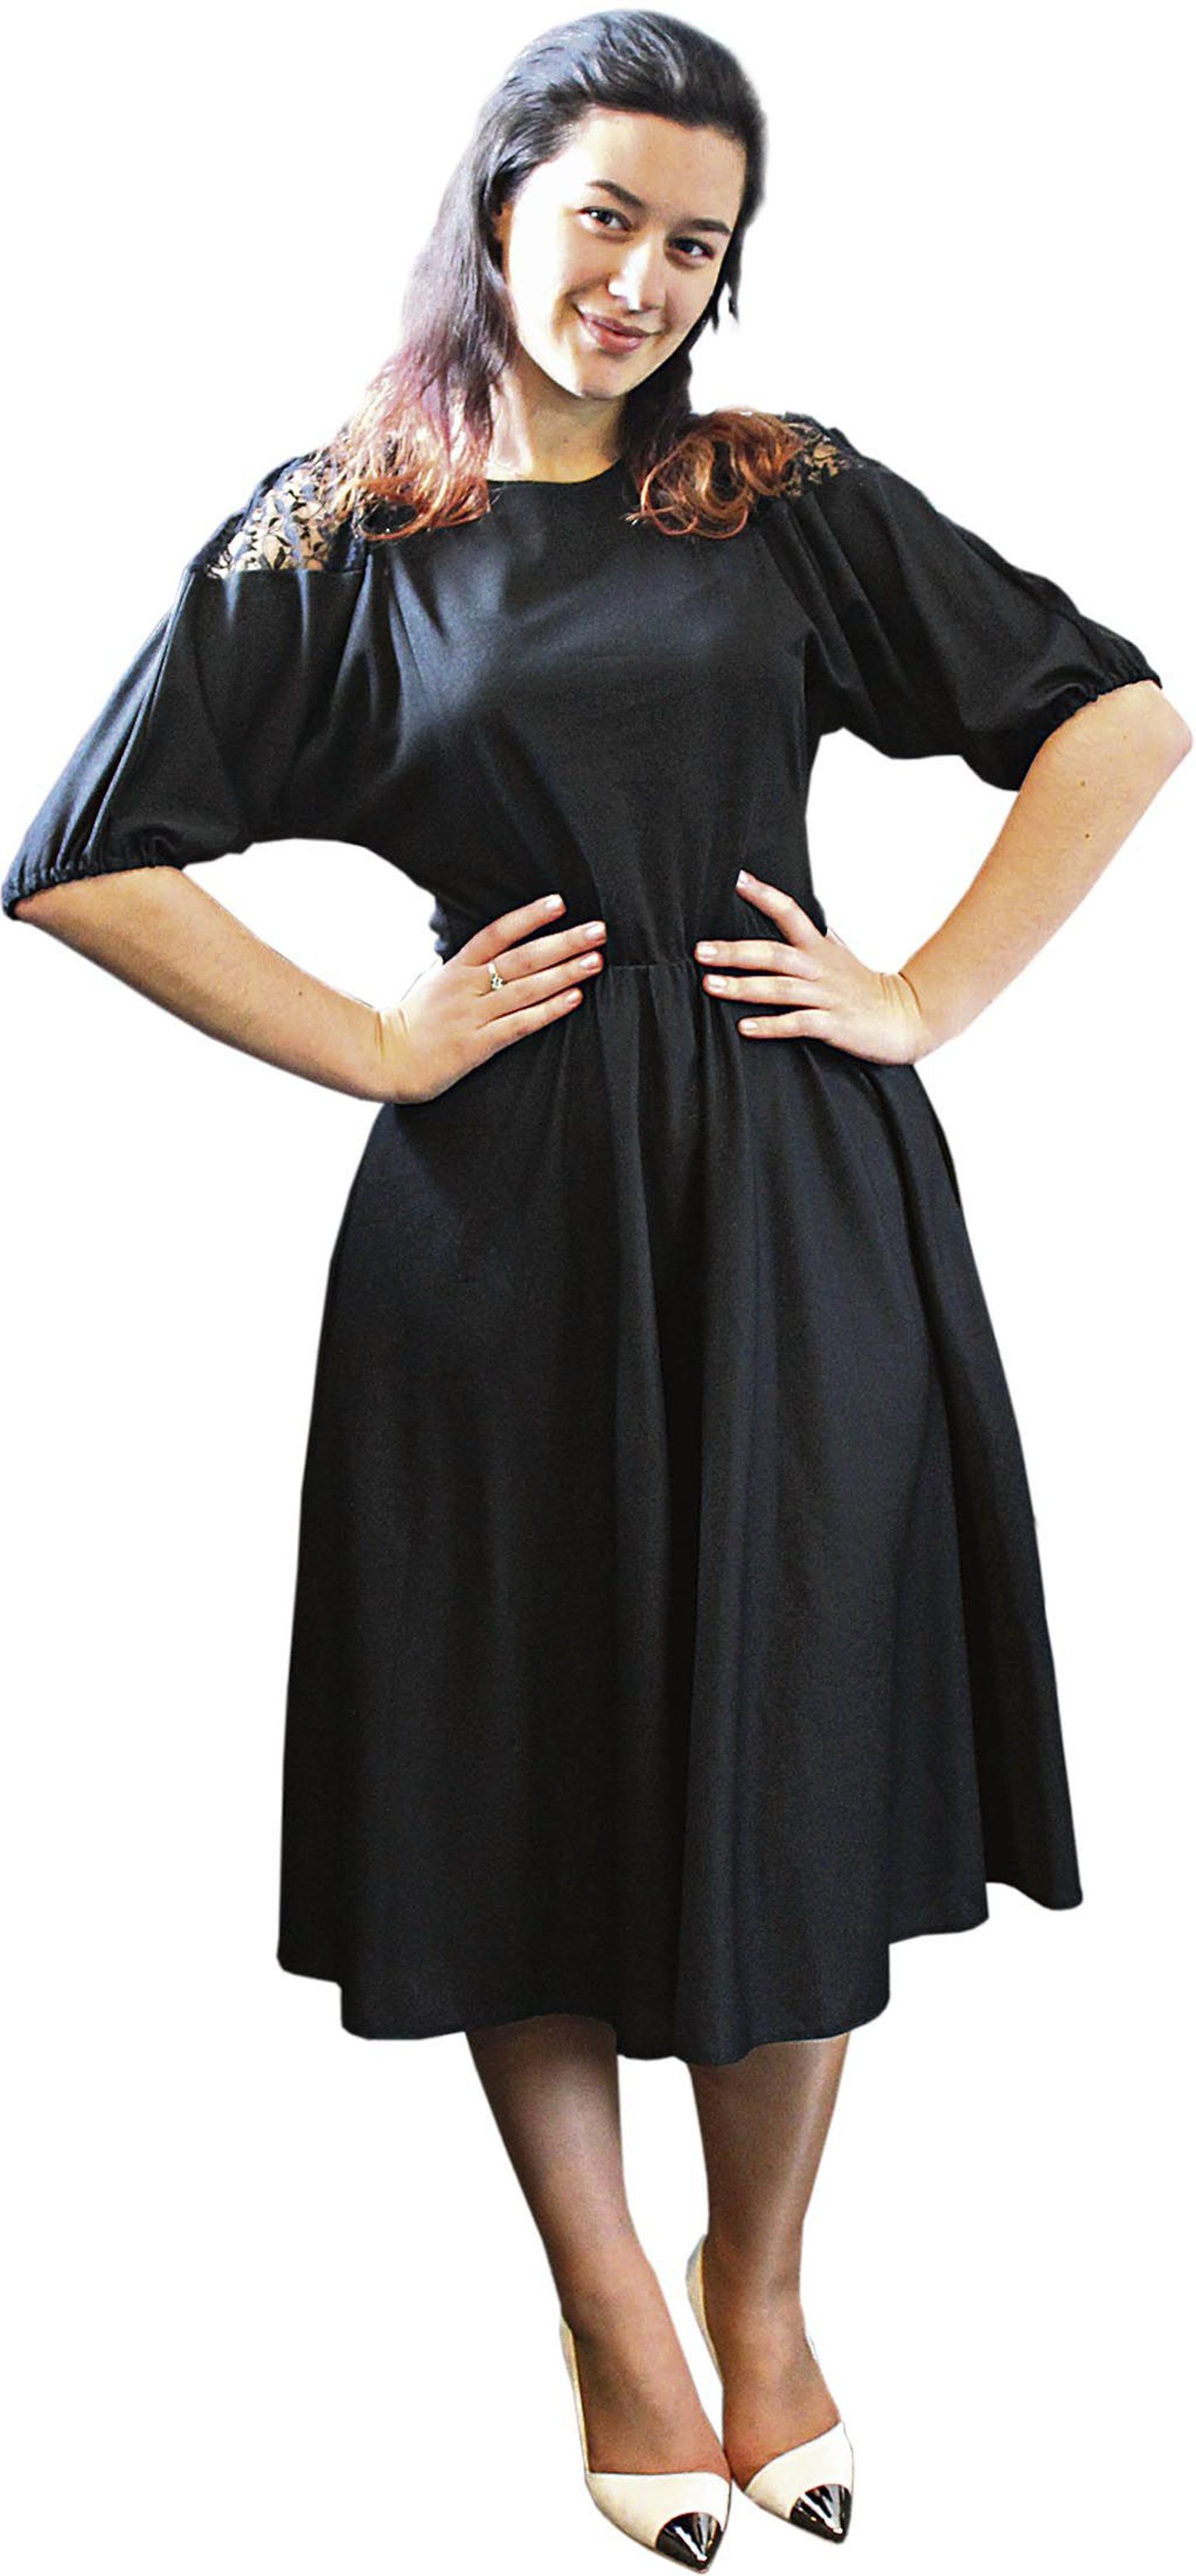 Pood: Jenny Kruse. Musta värvi romantikahõnguline kleit 7 eurot. Pidulikud kingad 4,90 eurot. Komplekti hind kokku 11,90 eurot.